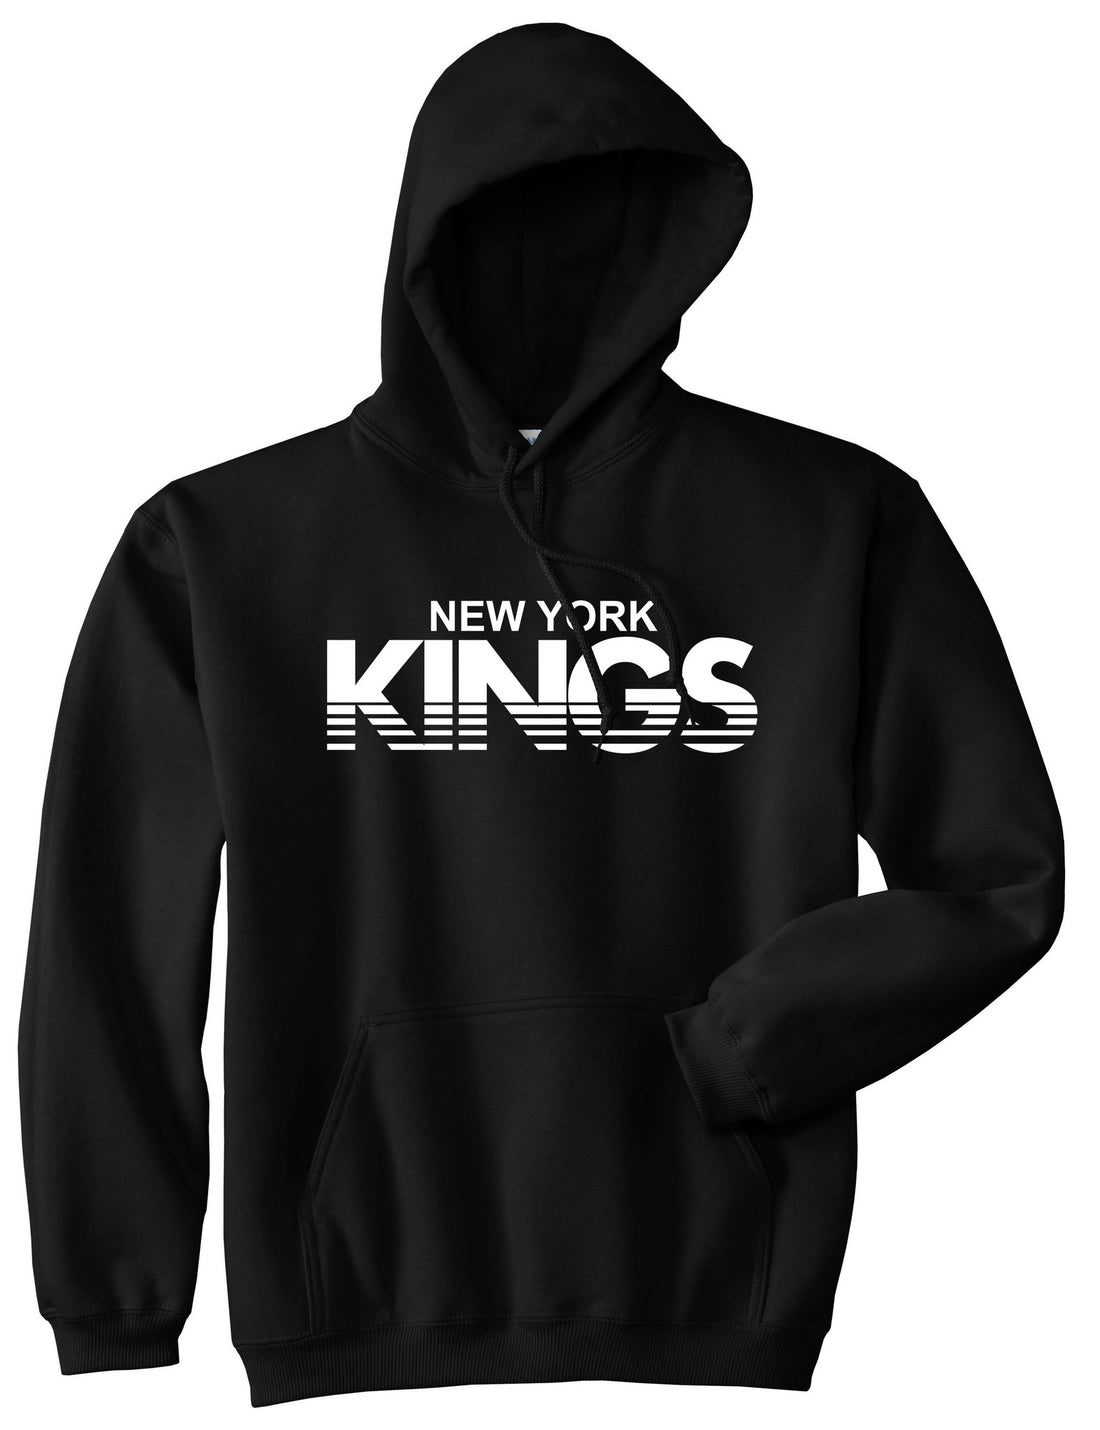 New York Kings Racing Style Pullover Hoodie Hoody in Black by Kings Of NY